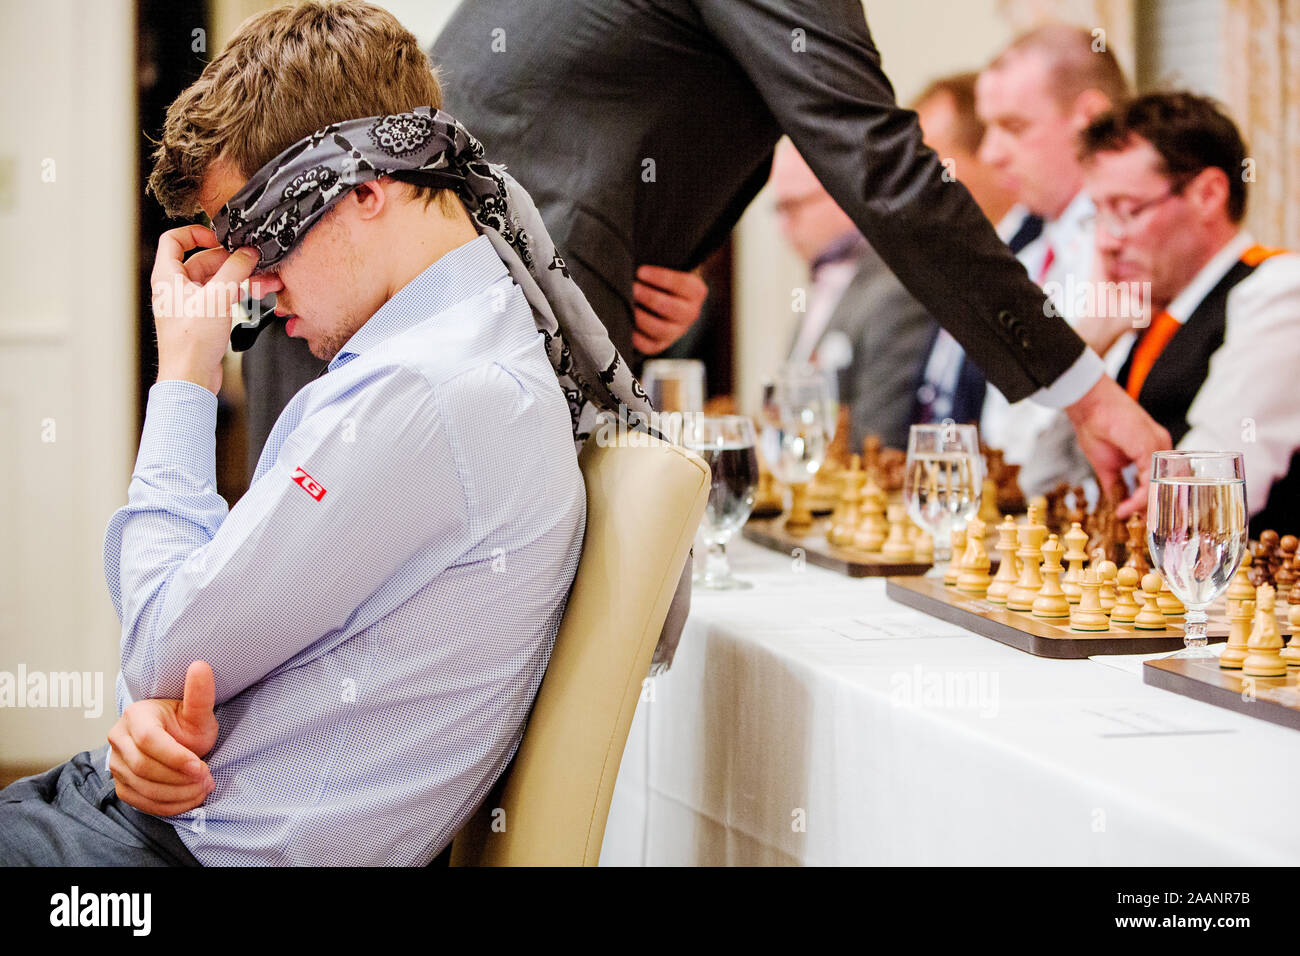 Magnus Carlsen, il campione di scacchi che si allena giocando a